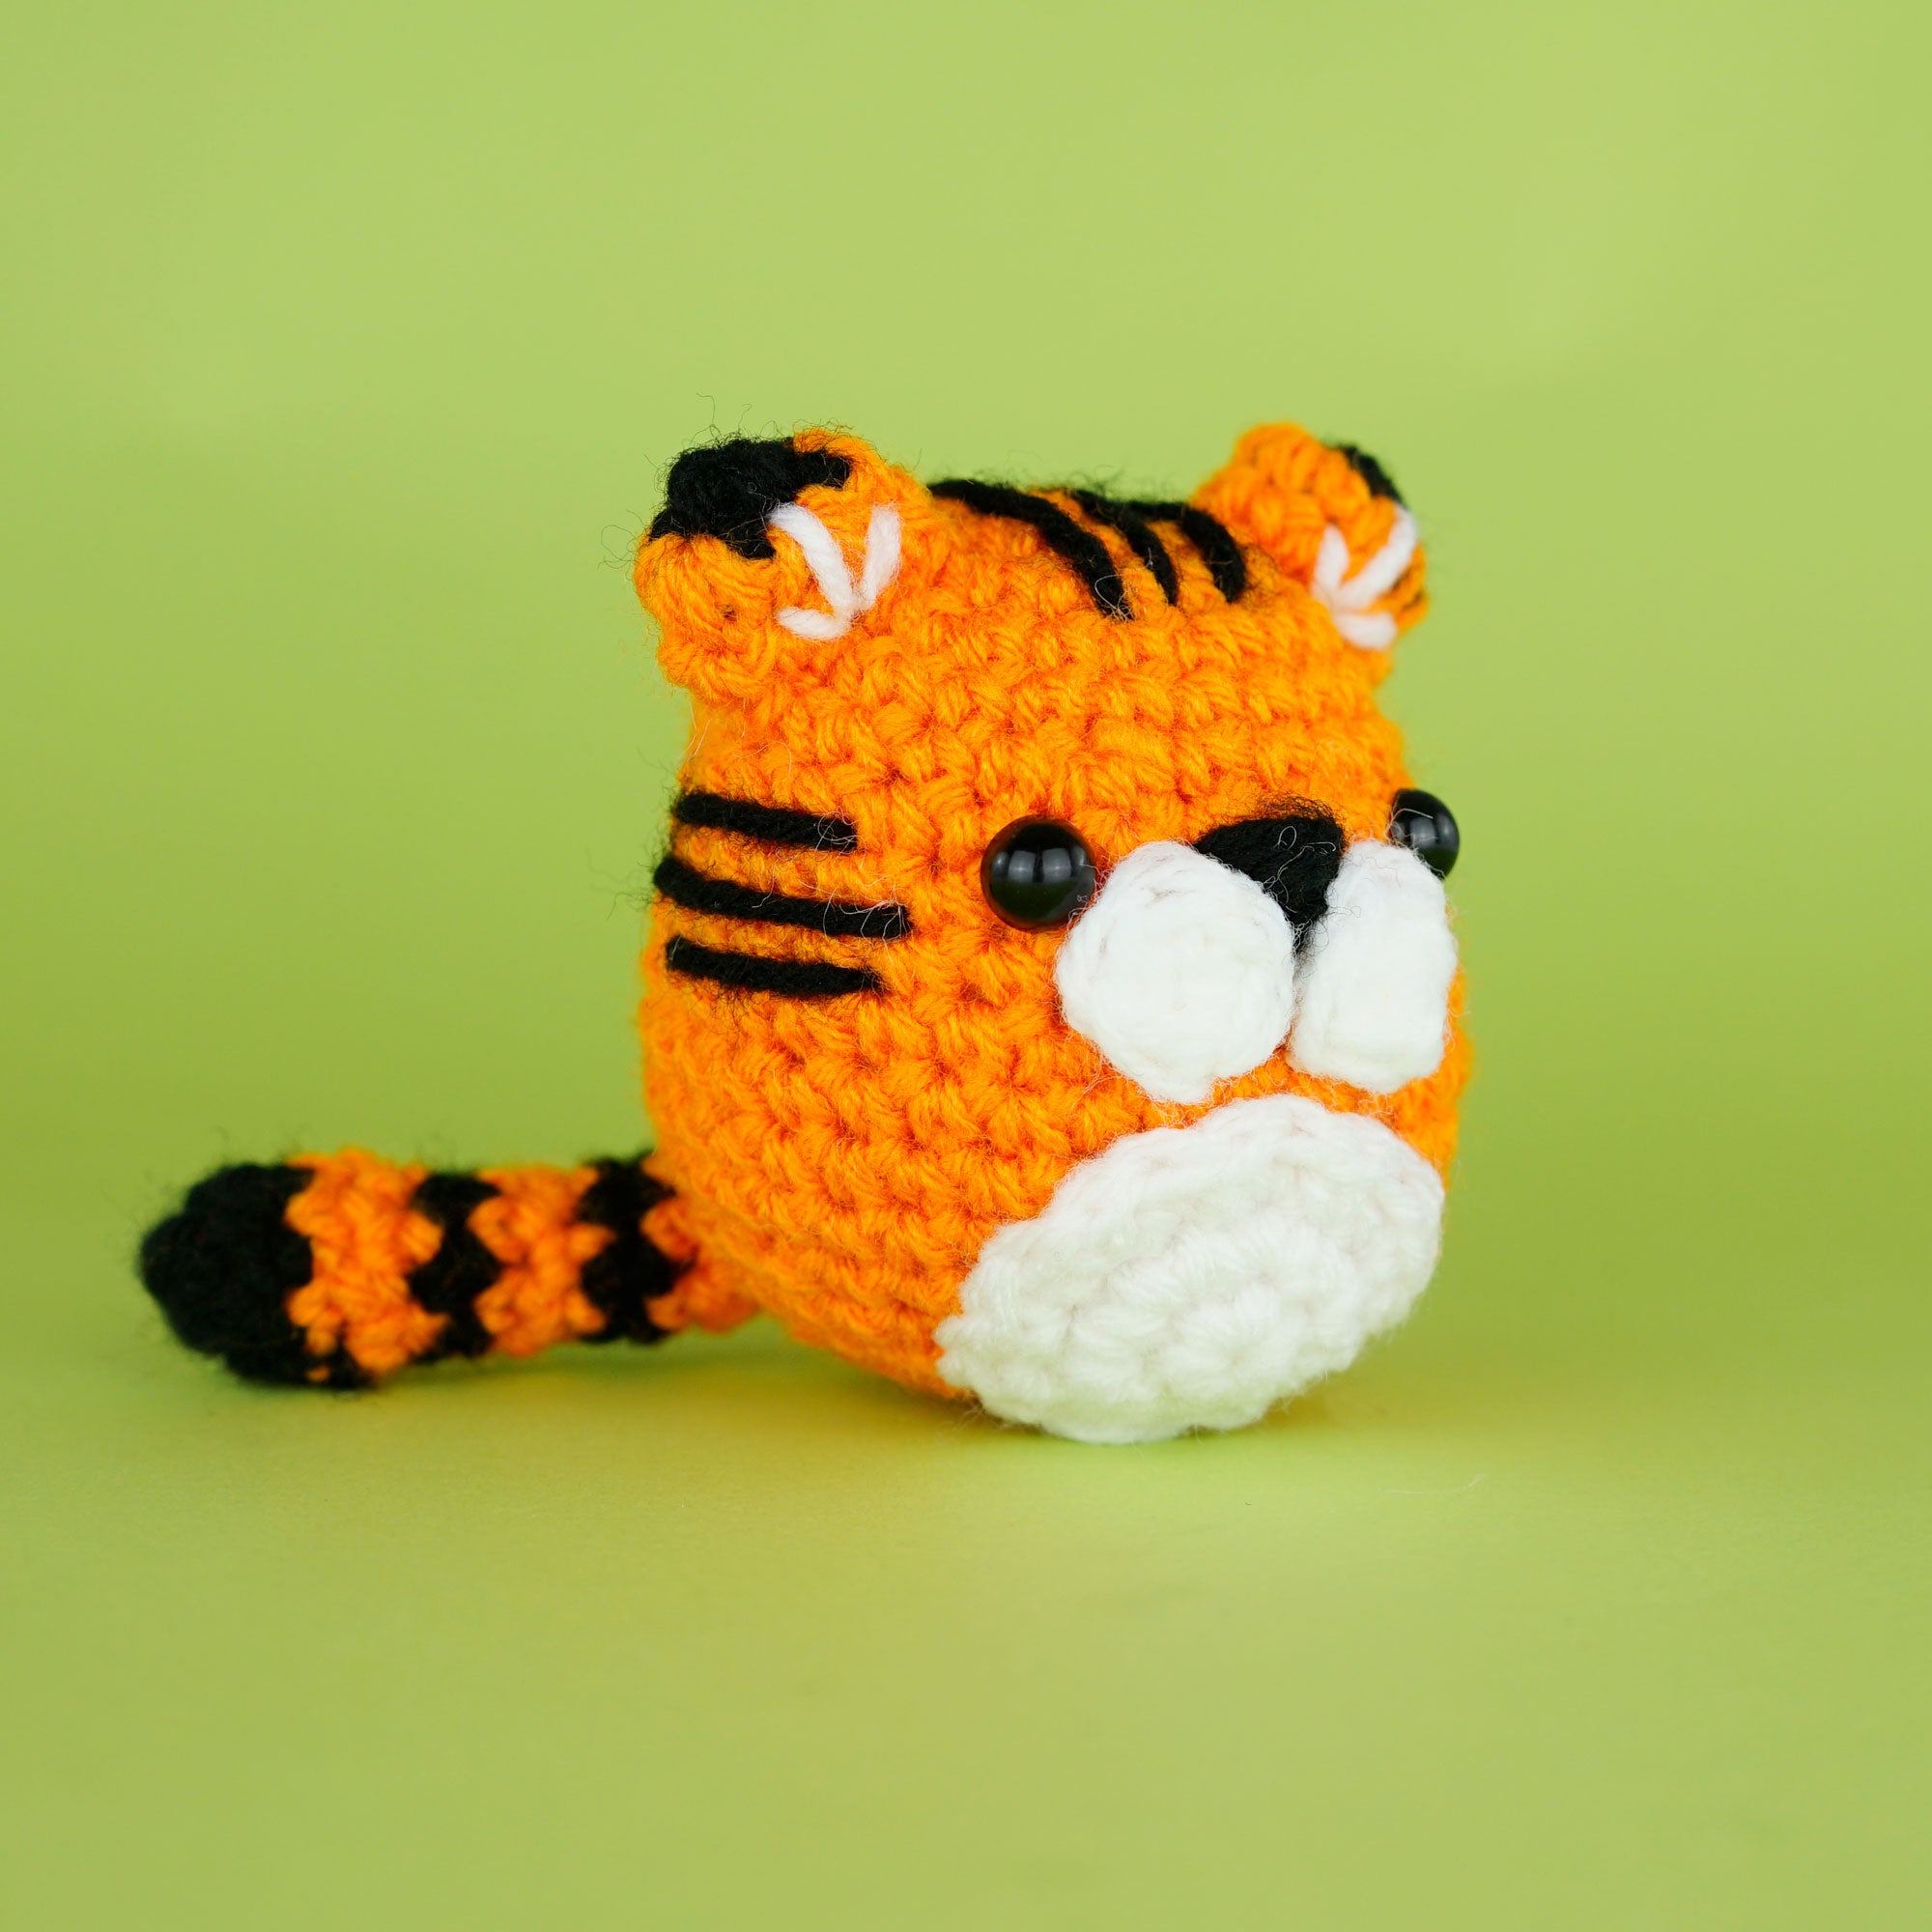 Tiger Crochet Kit for Beginners